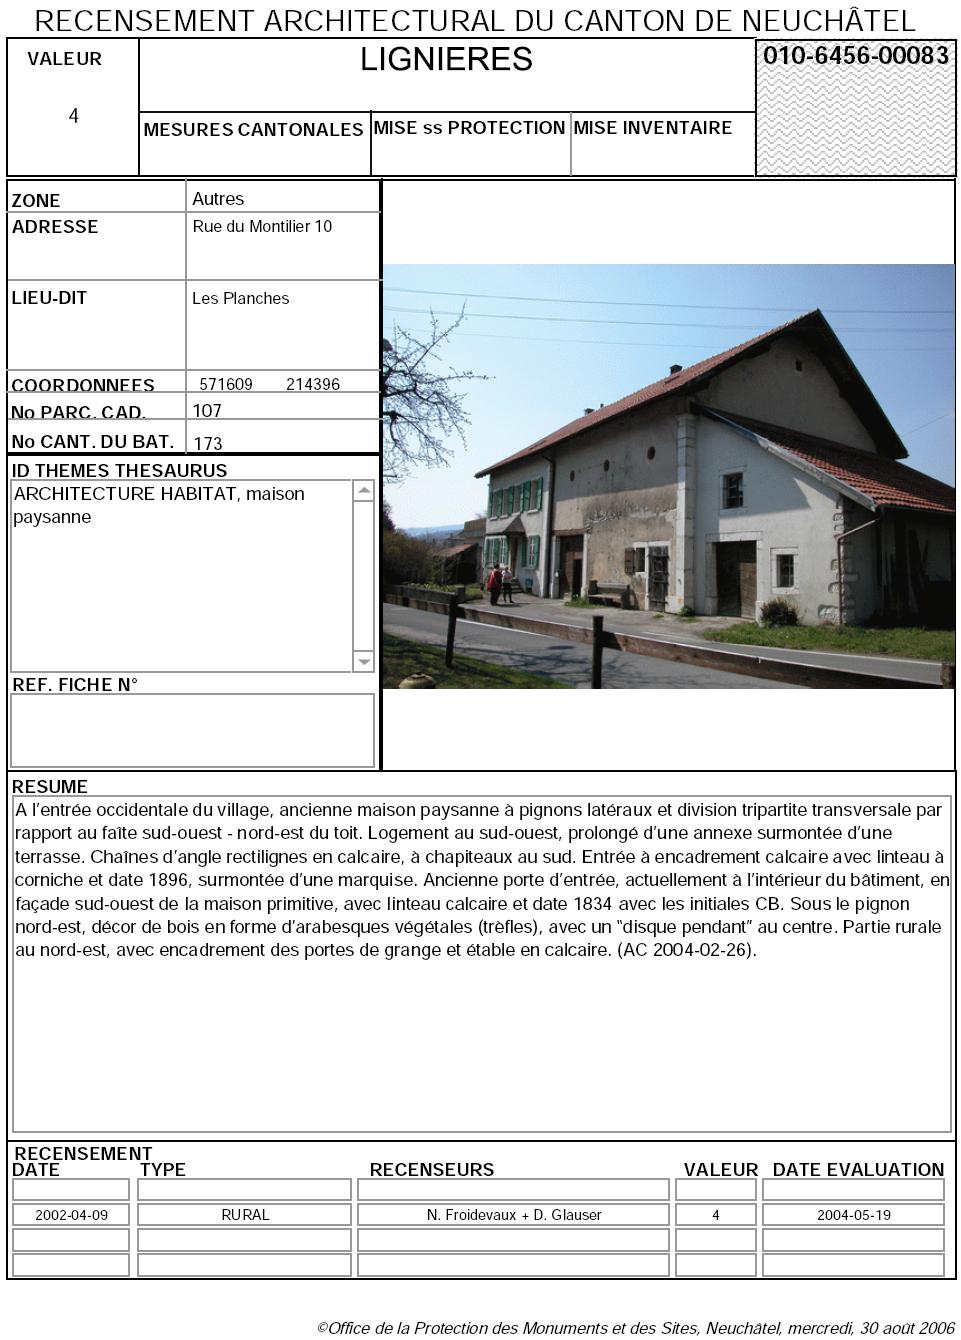 Recensement architectural du canton de Neuchâtel: Fiche 010-6456-00083